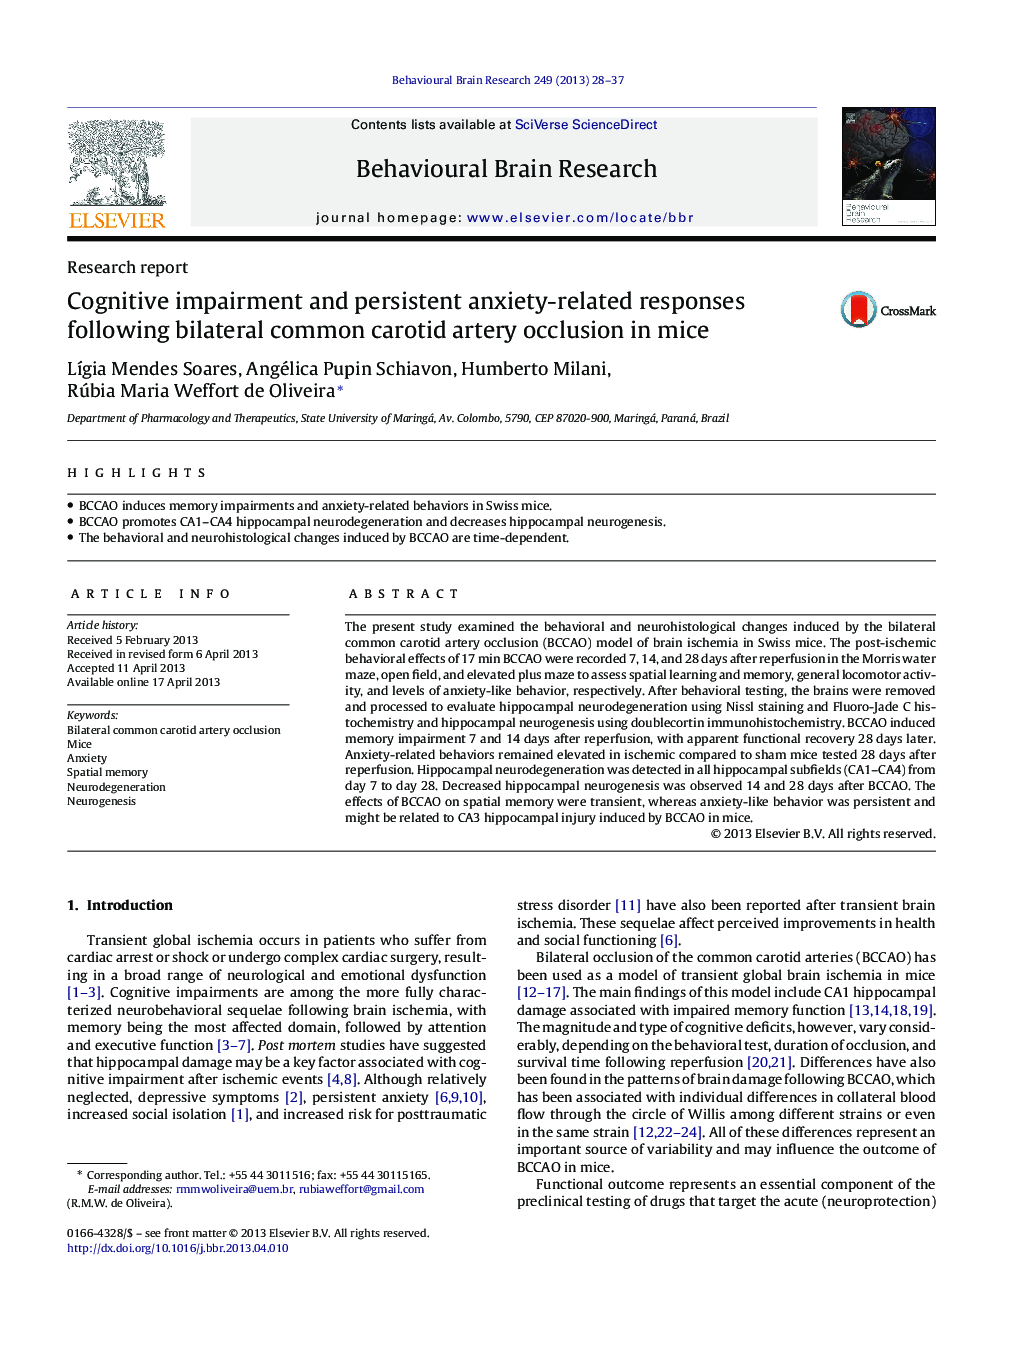 گزارش تحقیقاتی اختلالات شناختی و پاسخ های مرتبط با اضطراب ناشی از انسداد عروق مشترک دو طرفه کاروتید در موش سوری 